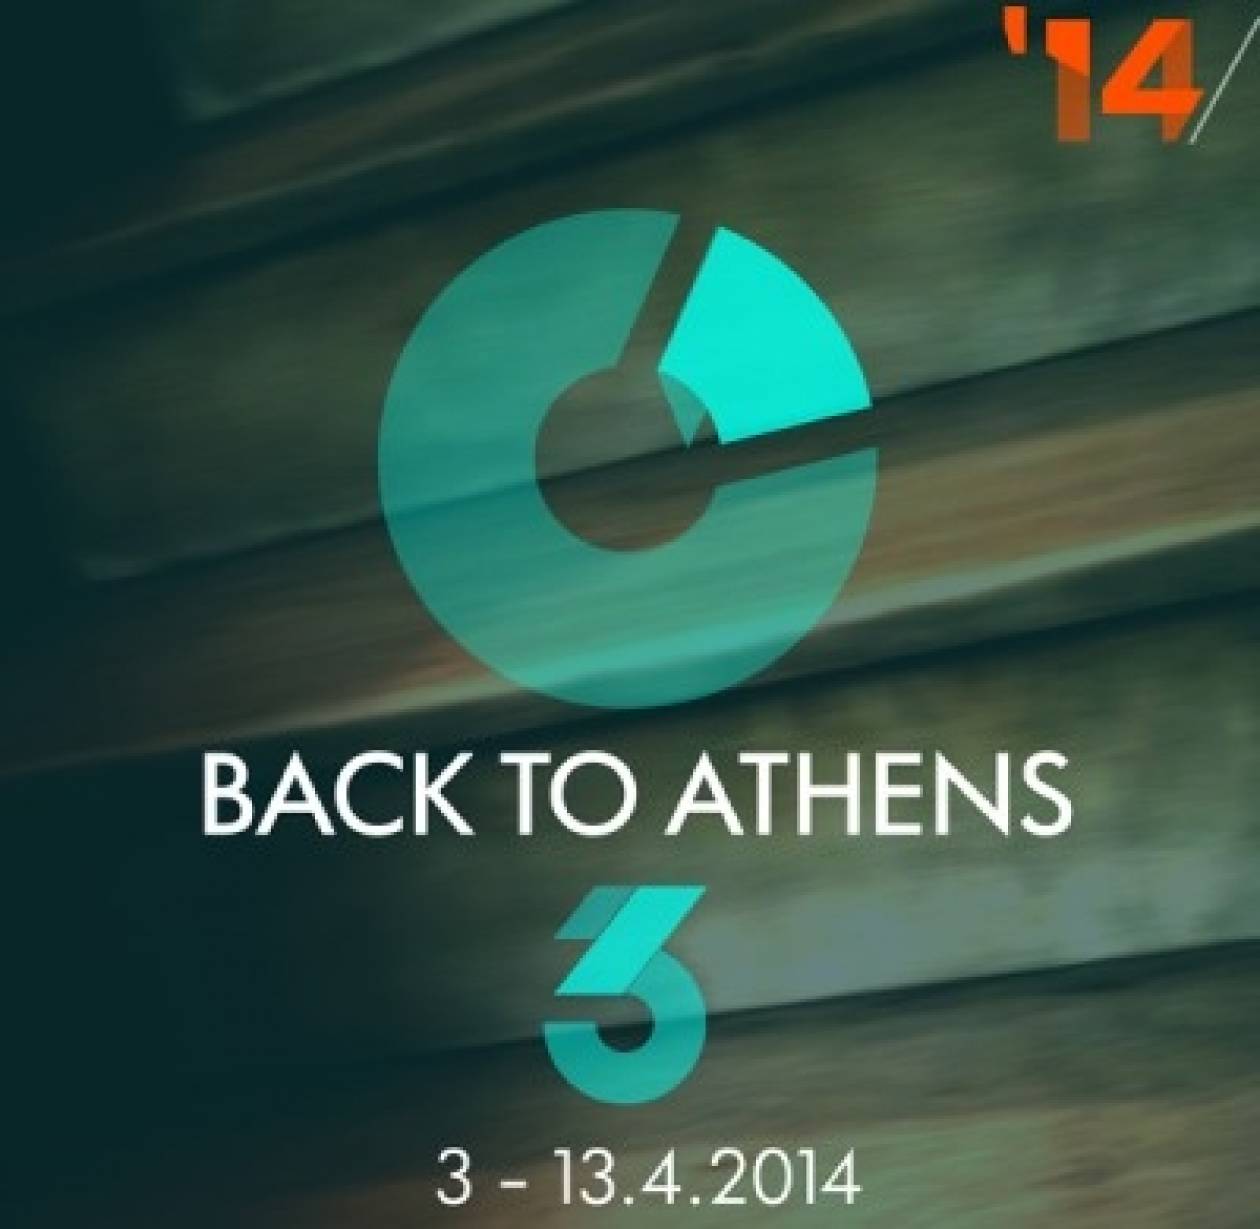 Back to Athens 2014 στην πλατεία Κοτζιά